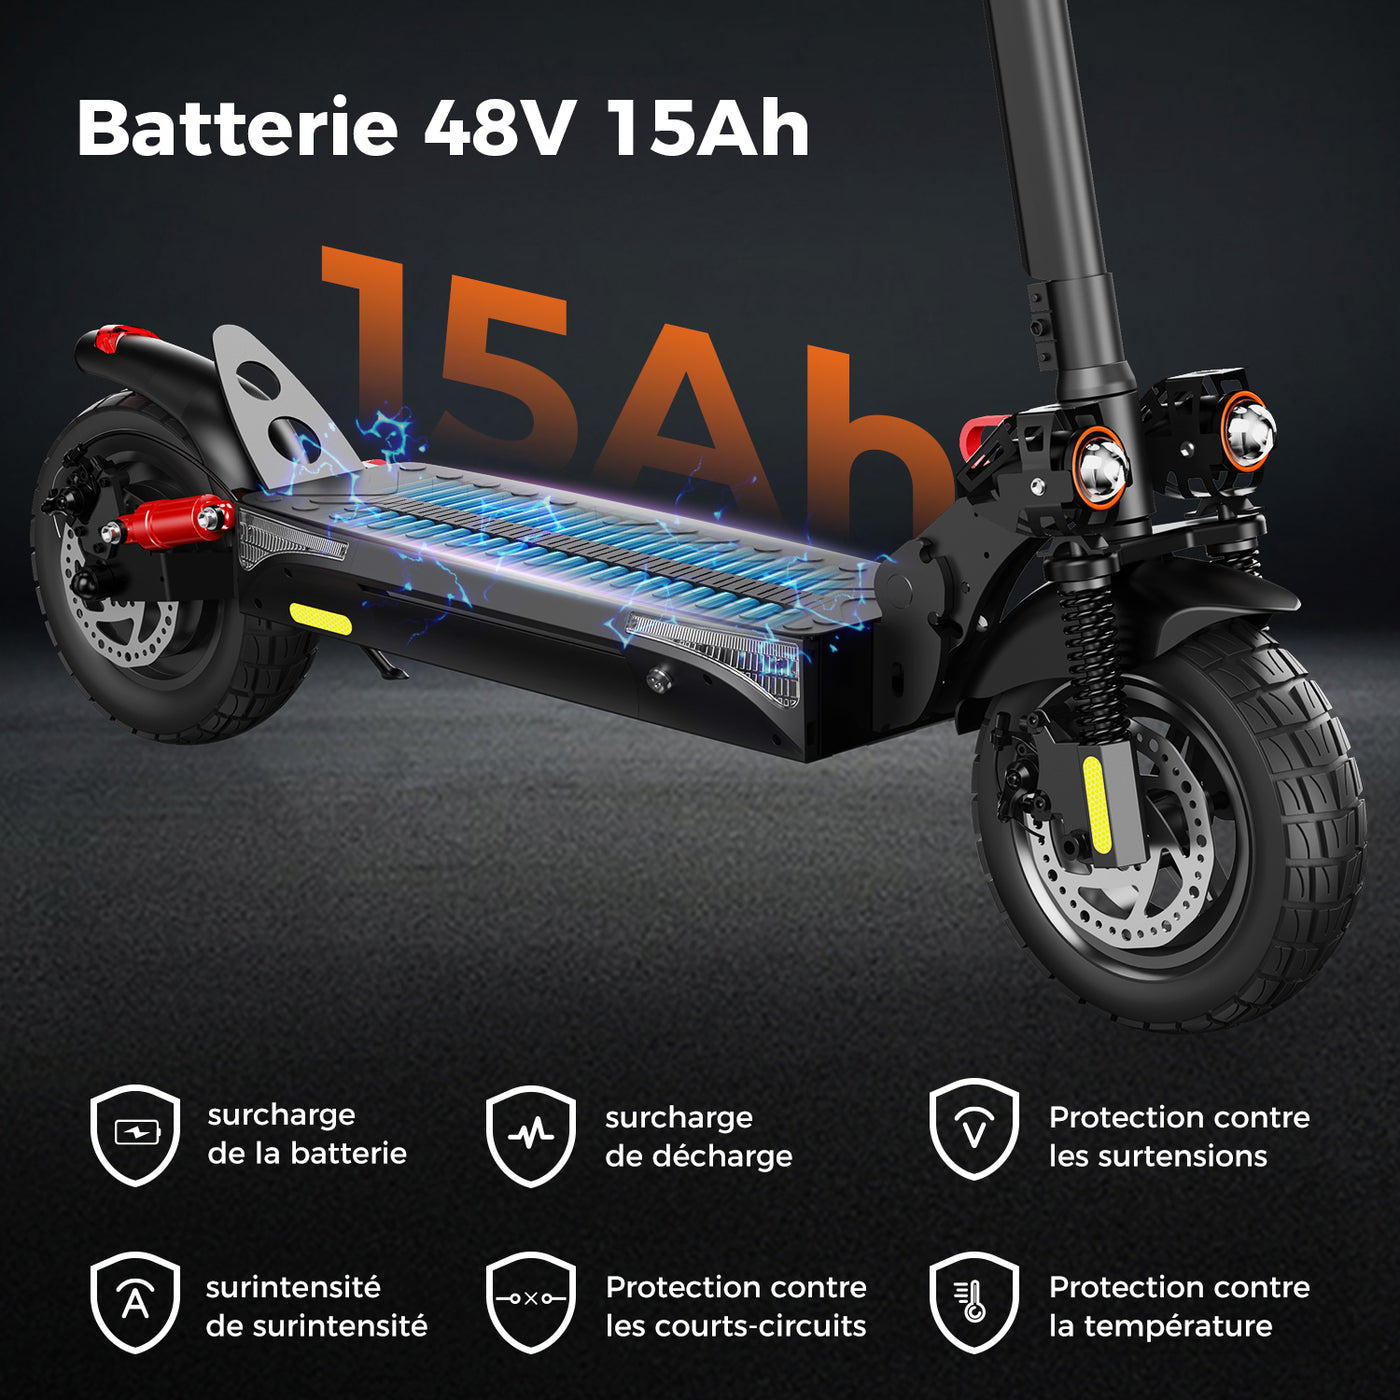 Trottinette électrique iScooter iX4 - 800W - 45 km/h – Scootnext